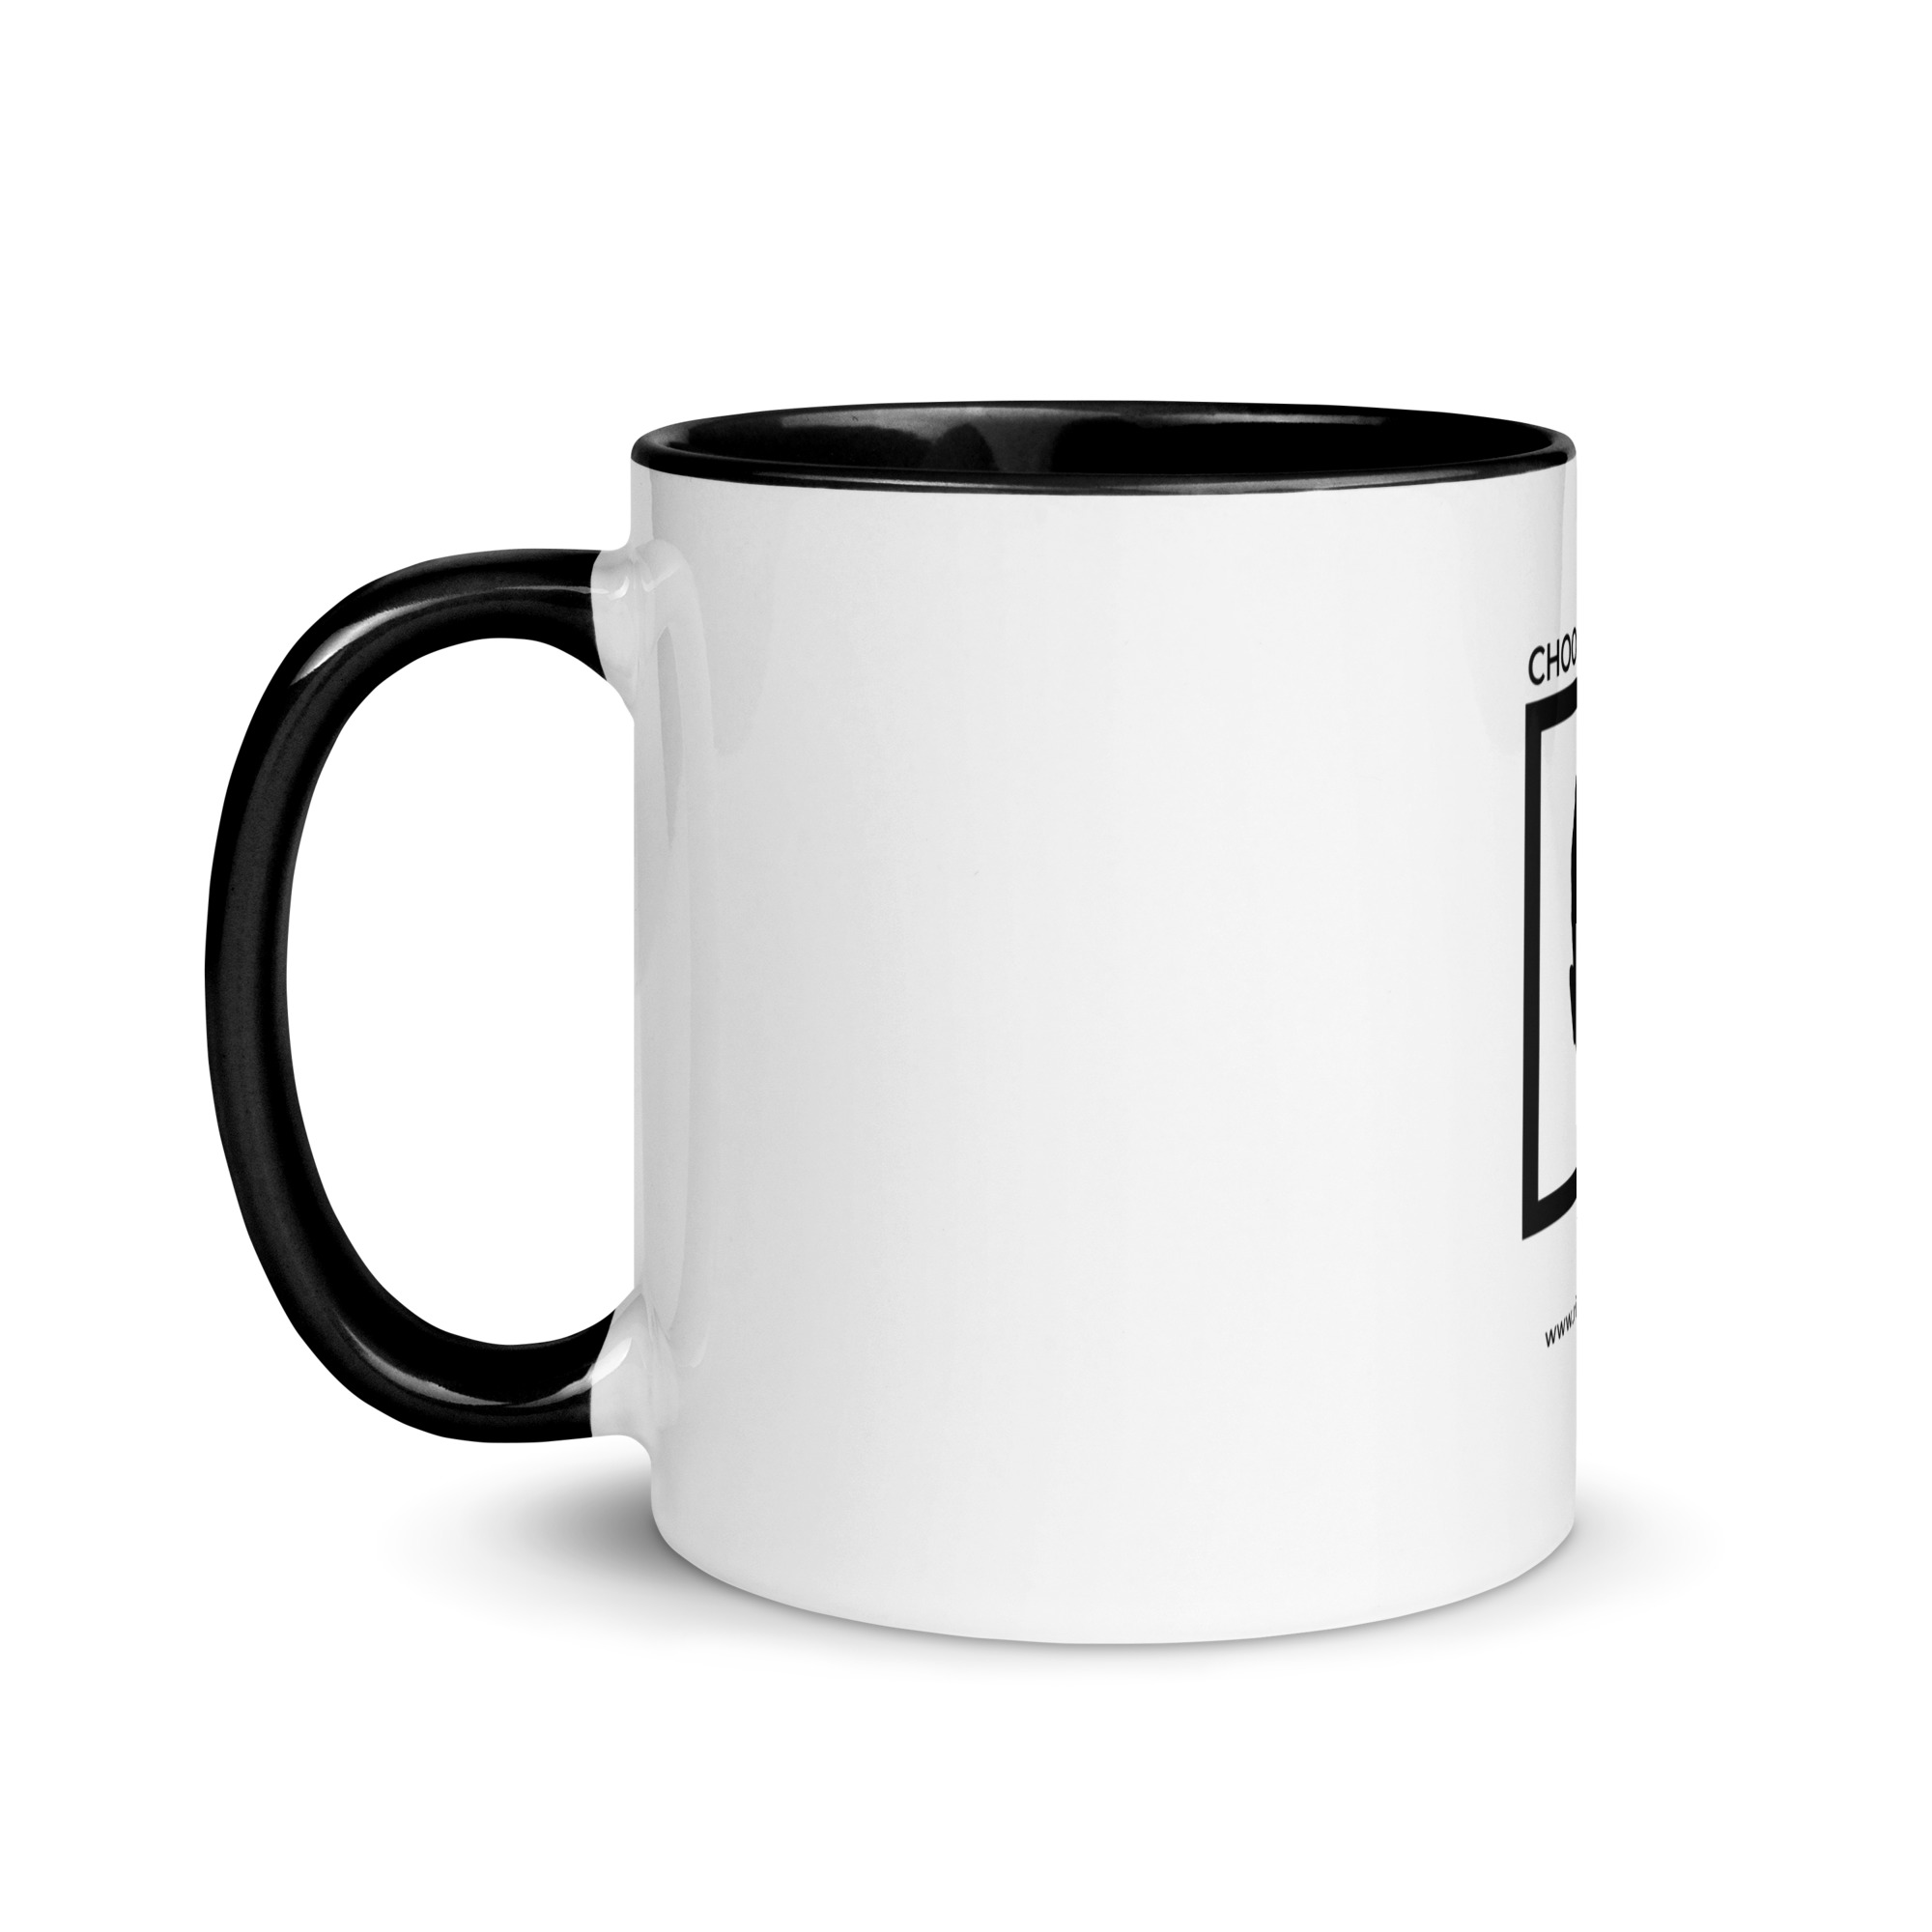 white-ceramic-mug-with-color-inside-black-11-oz-left-6522a1a403997.jpg